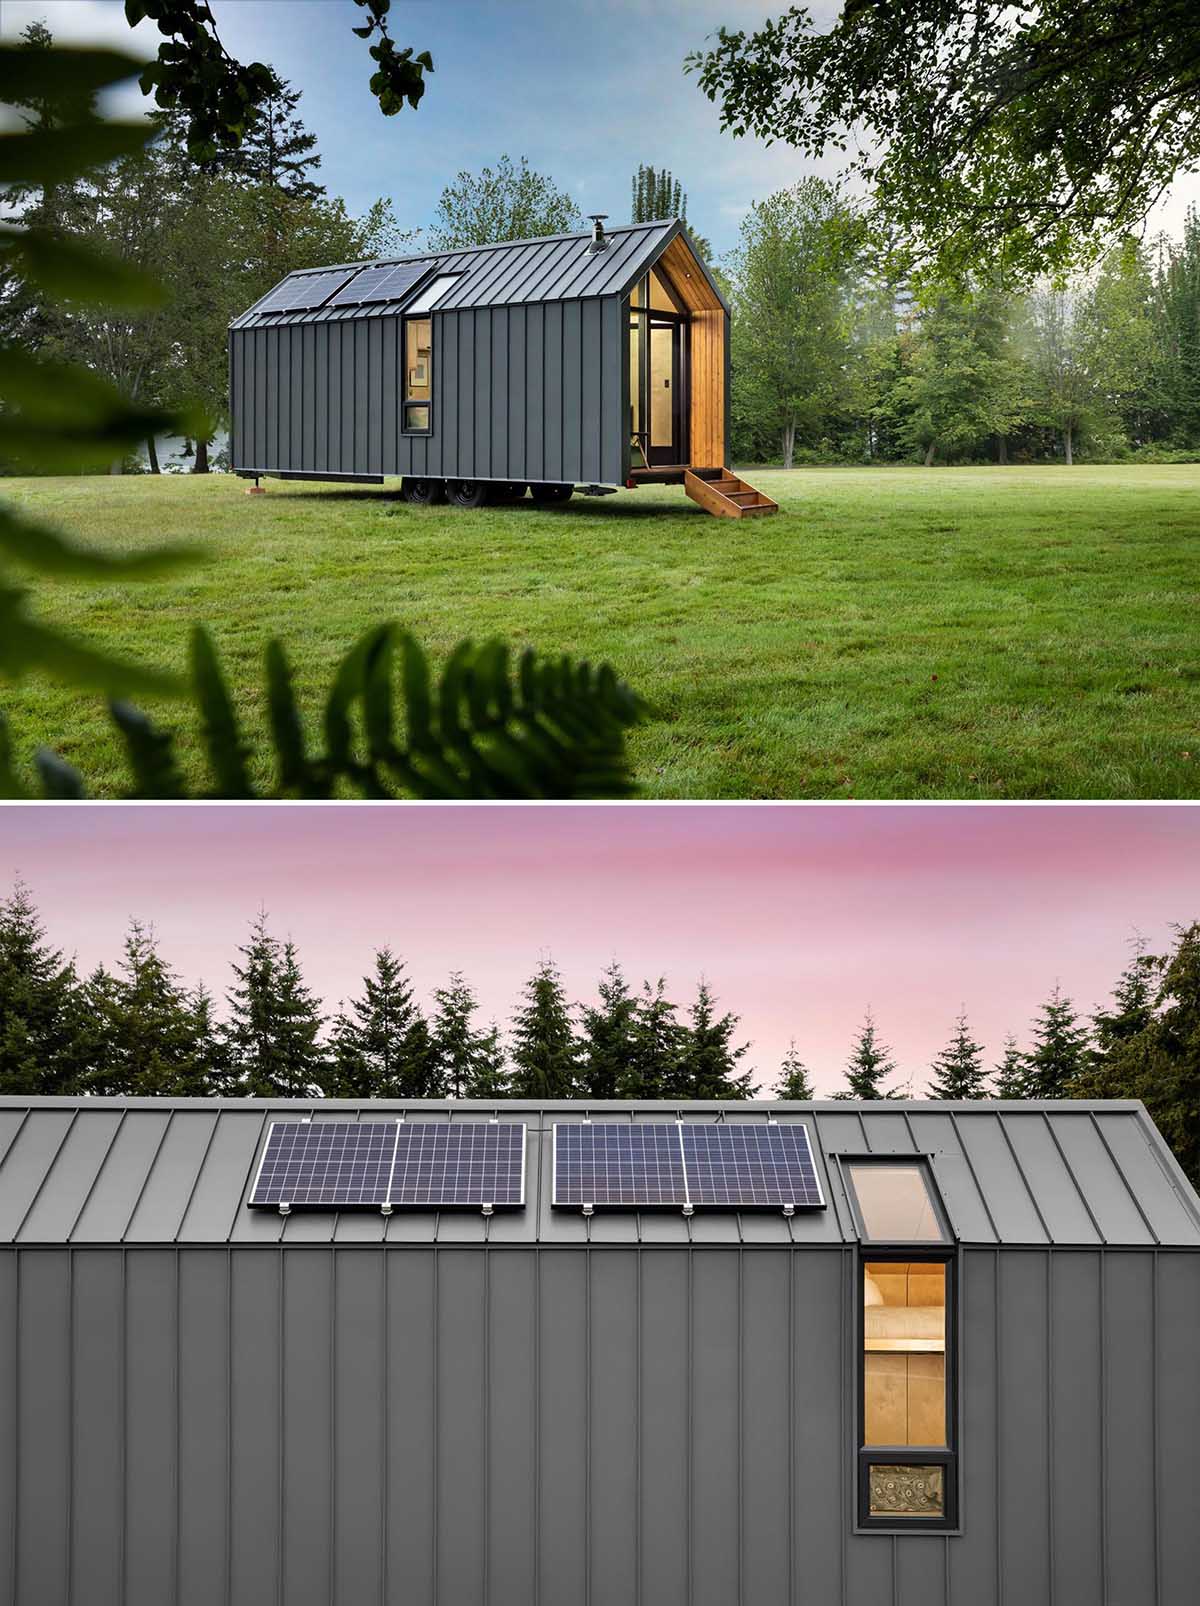 Этот современный крошечный дом имеет солнечную батарею на крыше, оснащенную батареями, металлический сайдинг со стоячим фальцем и акценты из кедра.